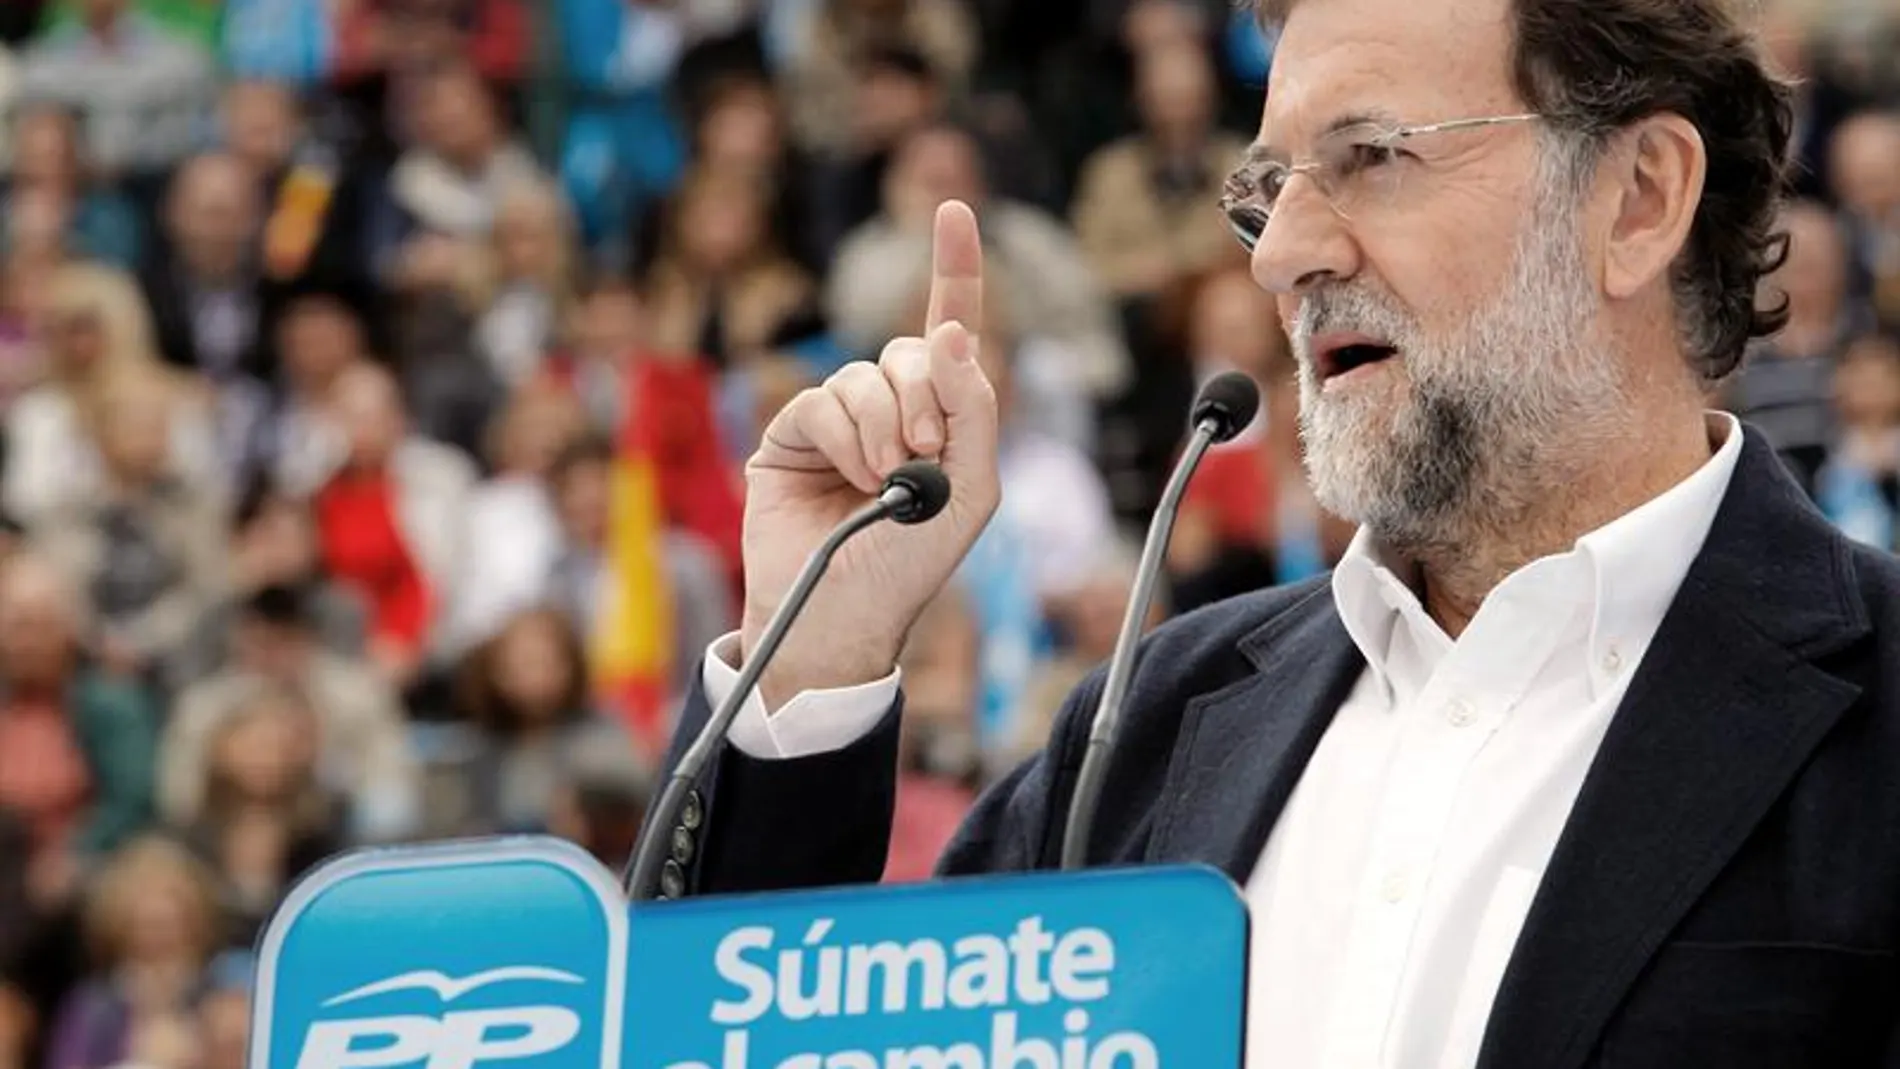 Mariano Rajoy, candidato popular a la presidencia del gobierno